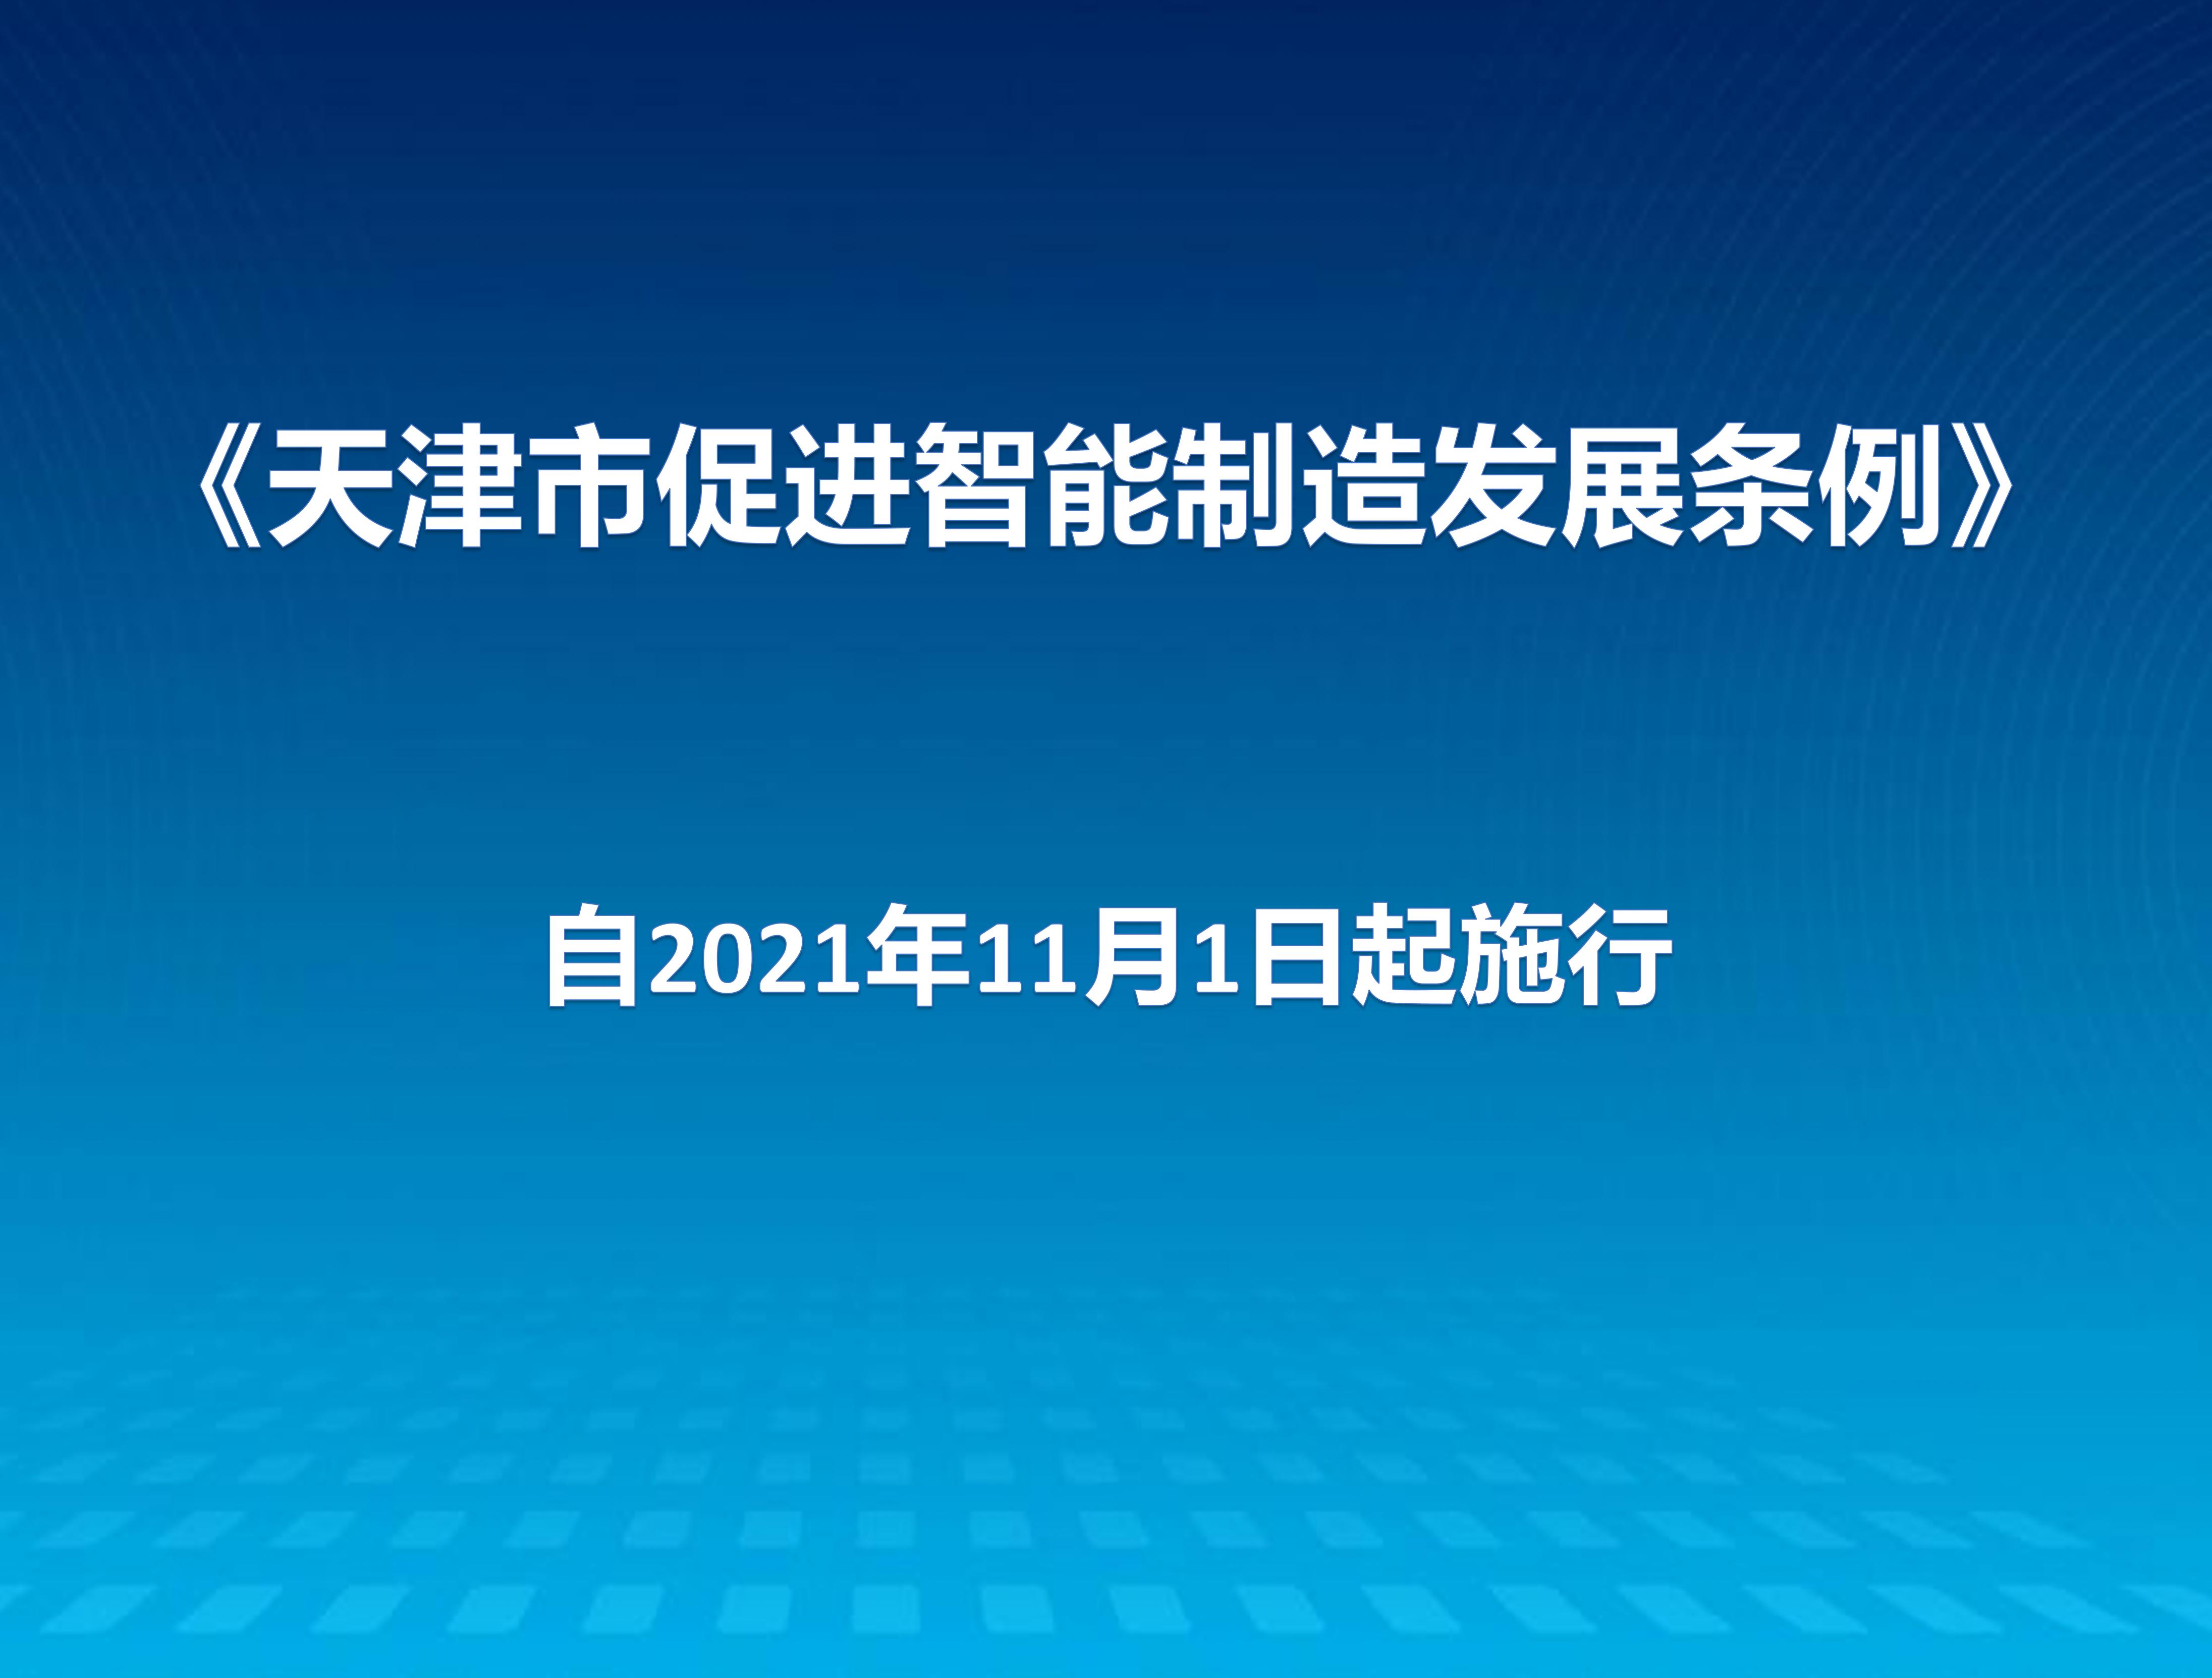 天津市促进智能制造发展条例通过自2021年11月1日起施行